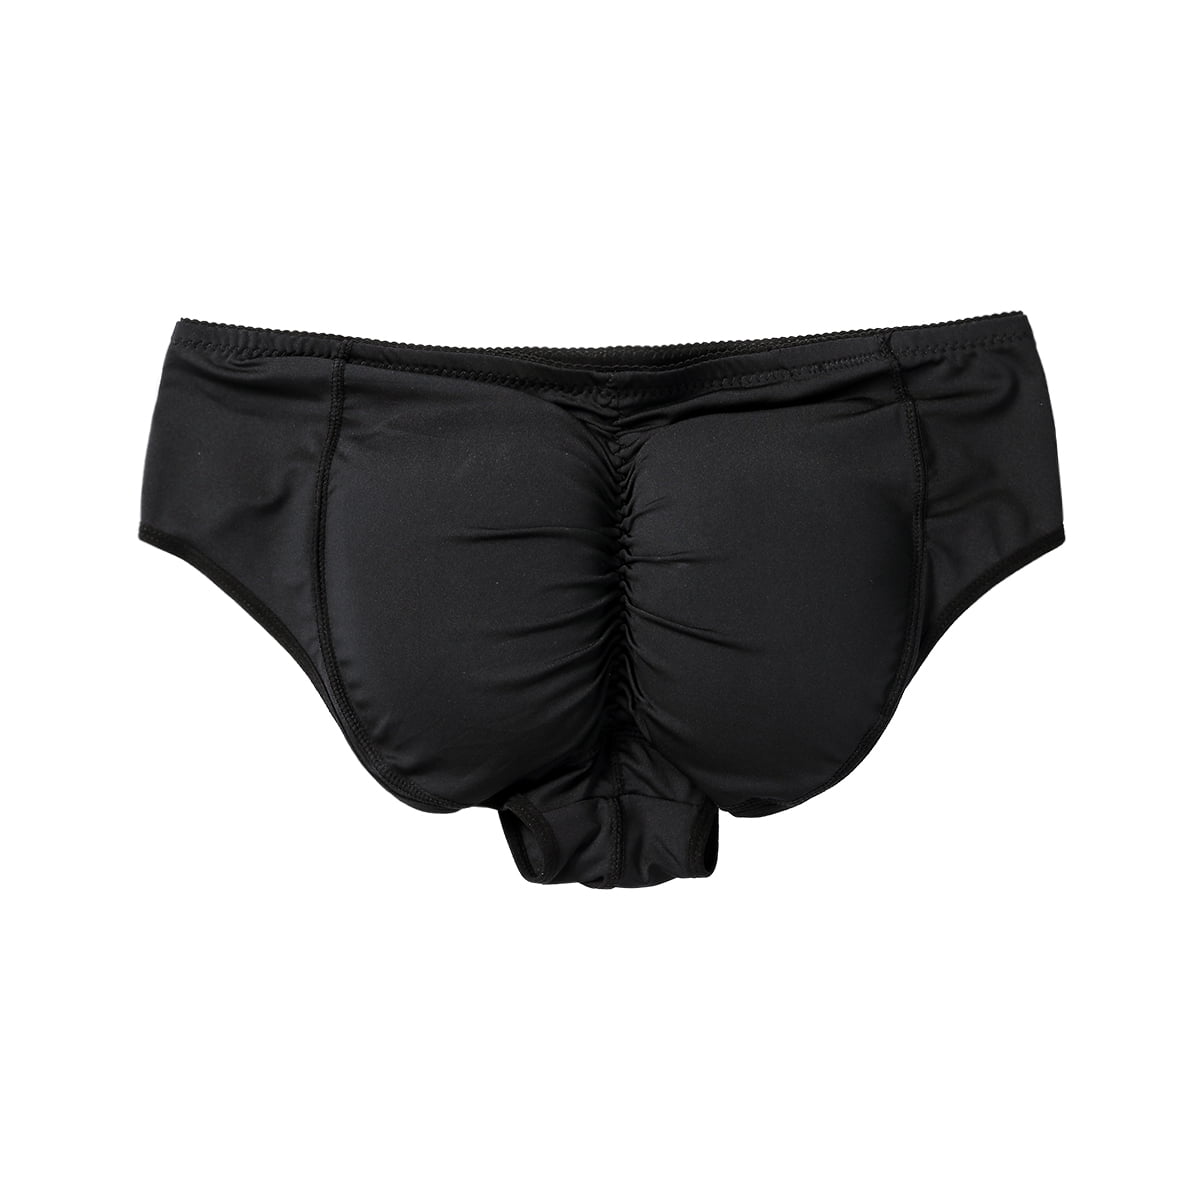 Garteder Men's Padded Underwear Butt Lifter Hip Enhancing Perfect